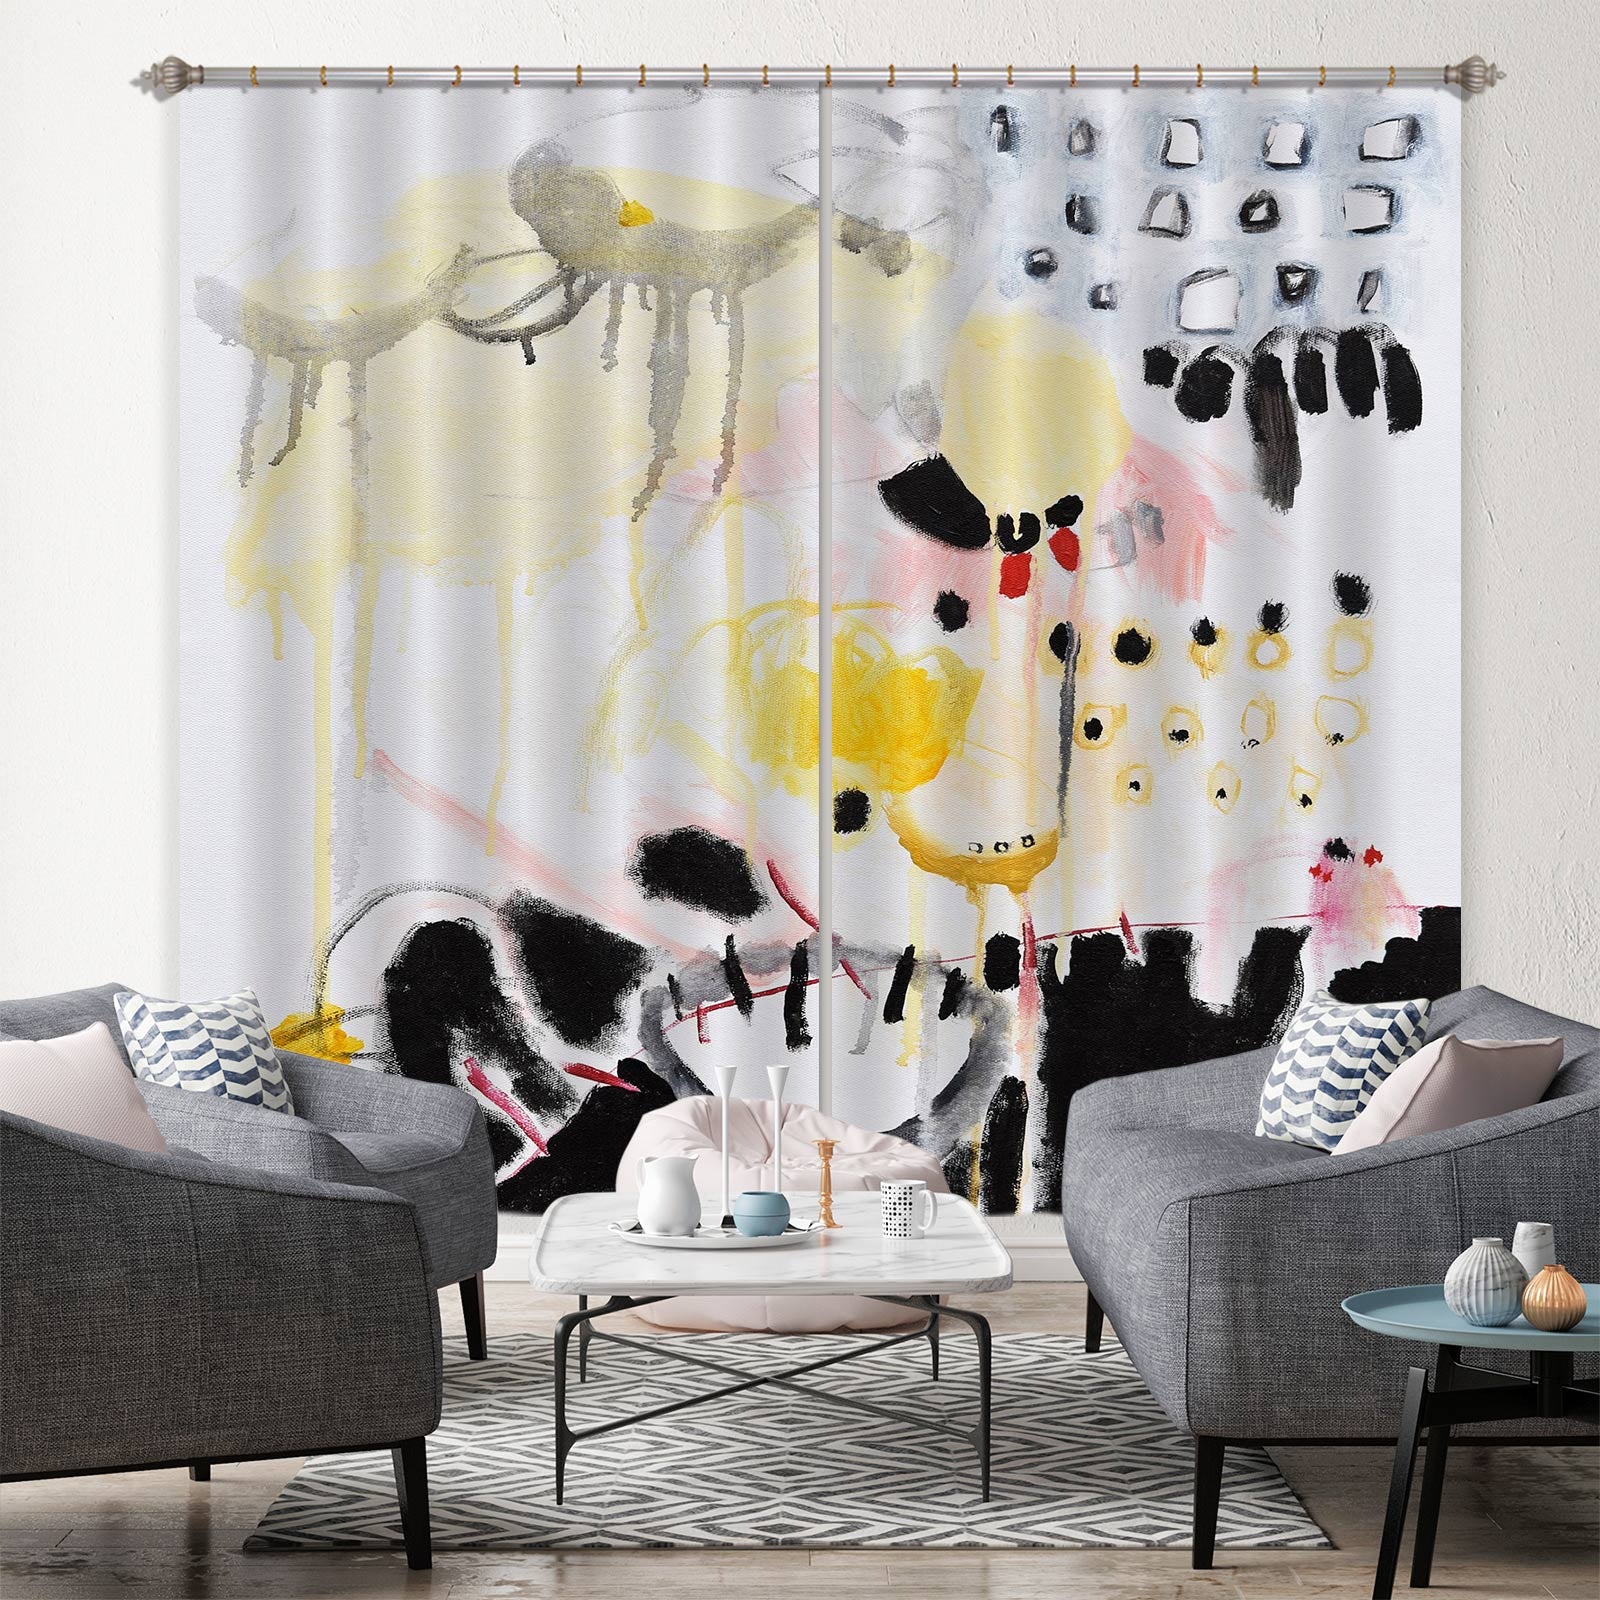 3D Black Watercolor 2392 Misako Chida Curtain Curtains Drapes